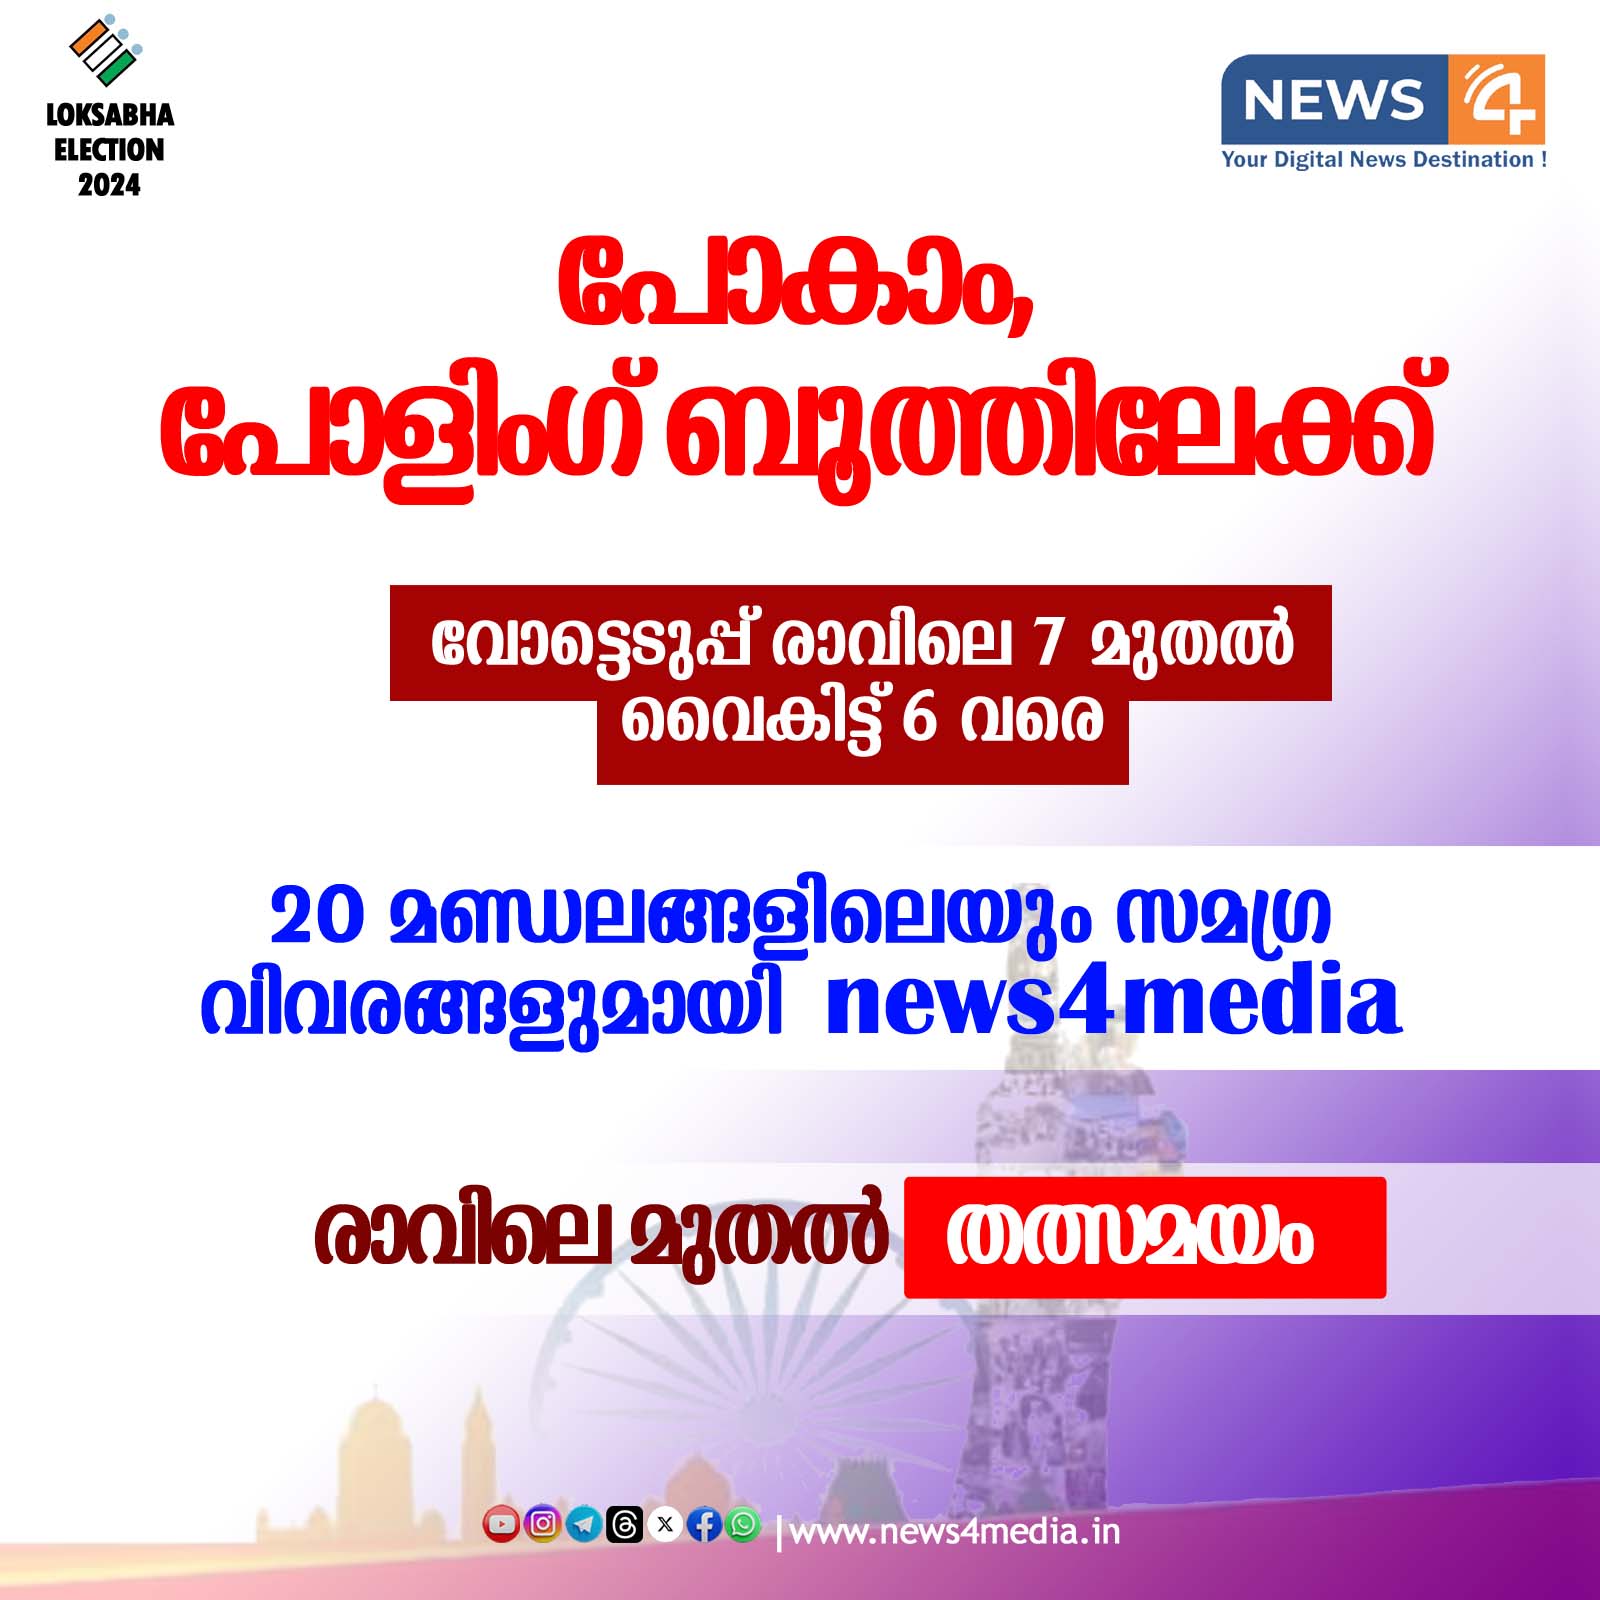 News4media